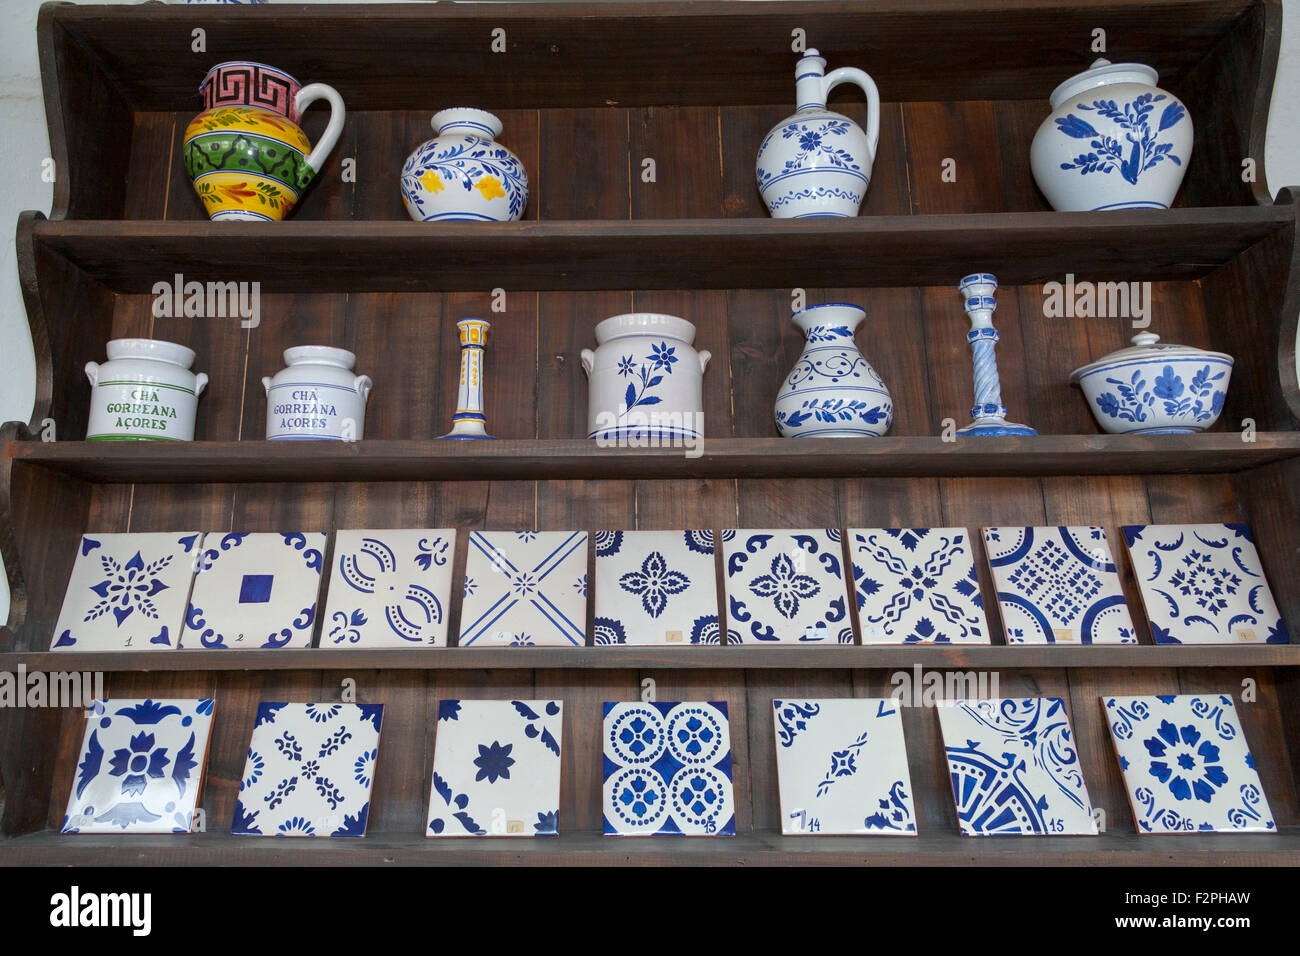 Isole Azzorre ceramiche tipiche sul display in Ceramica Vieira. Lagoa, isola Sao Miguel, Azzorre, Portogallo. Foto Stock